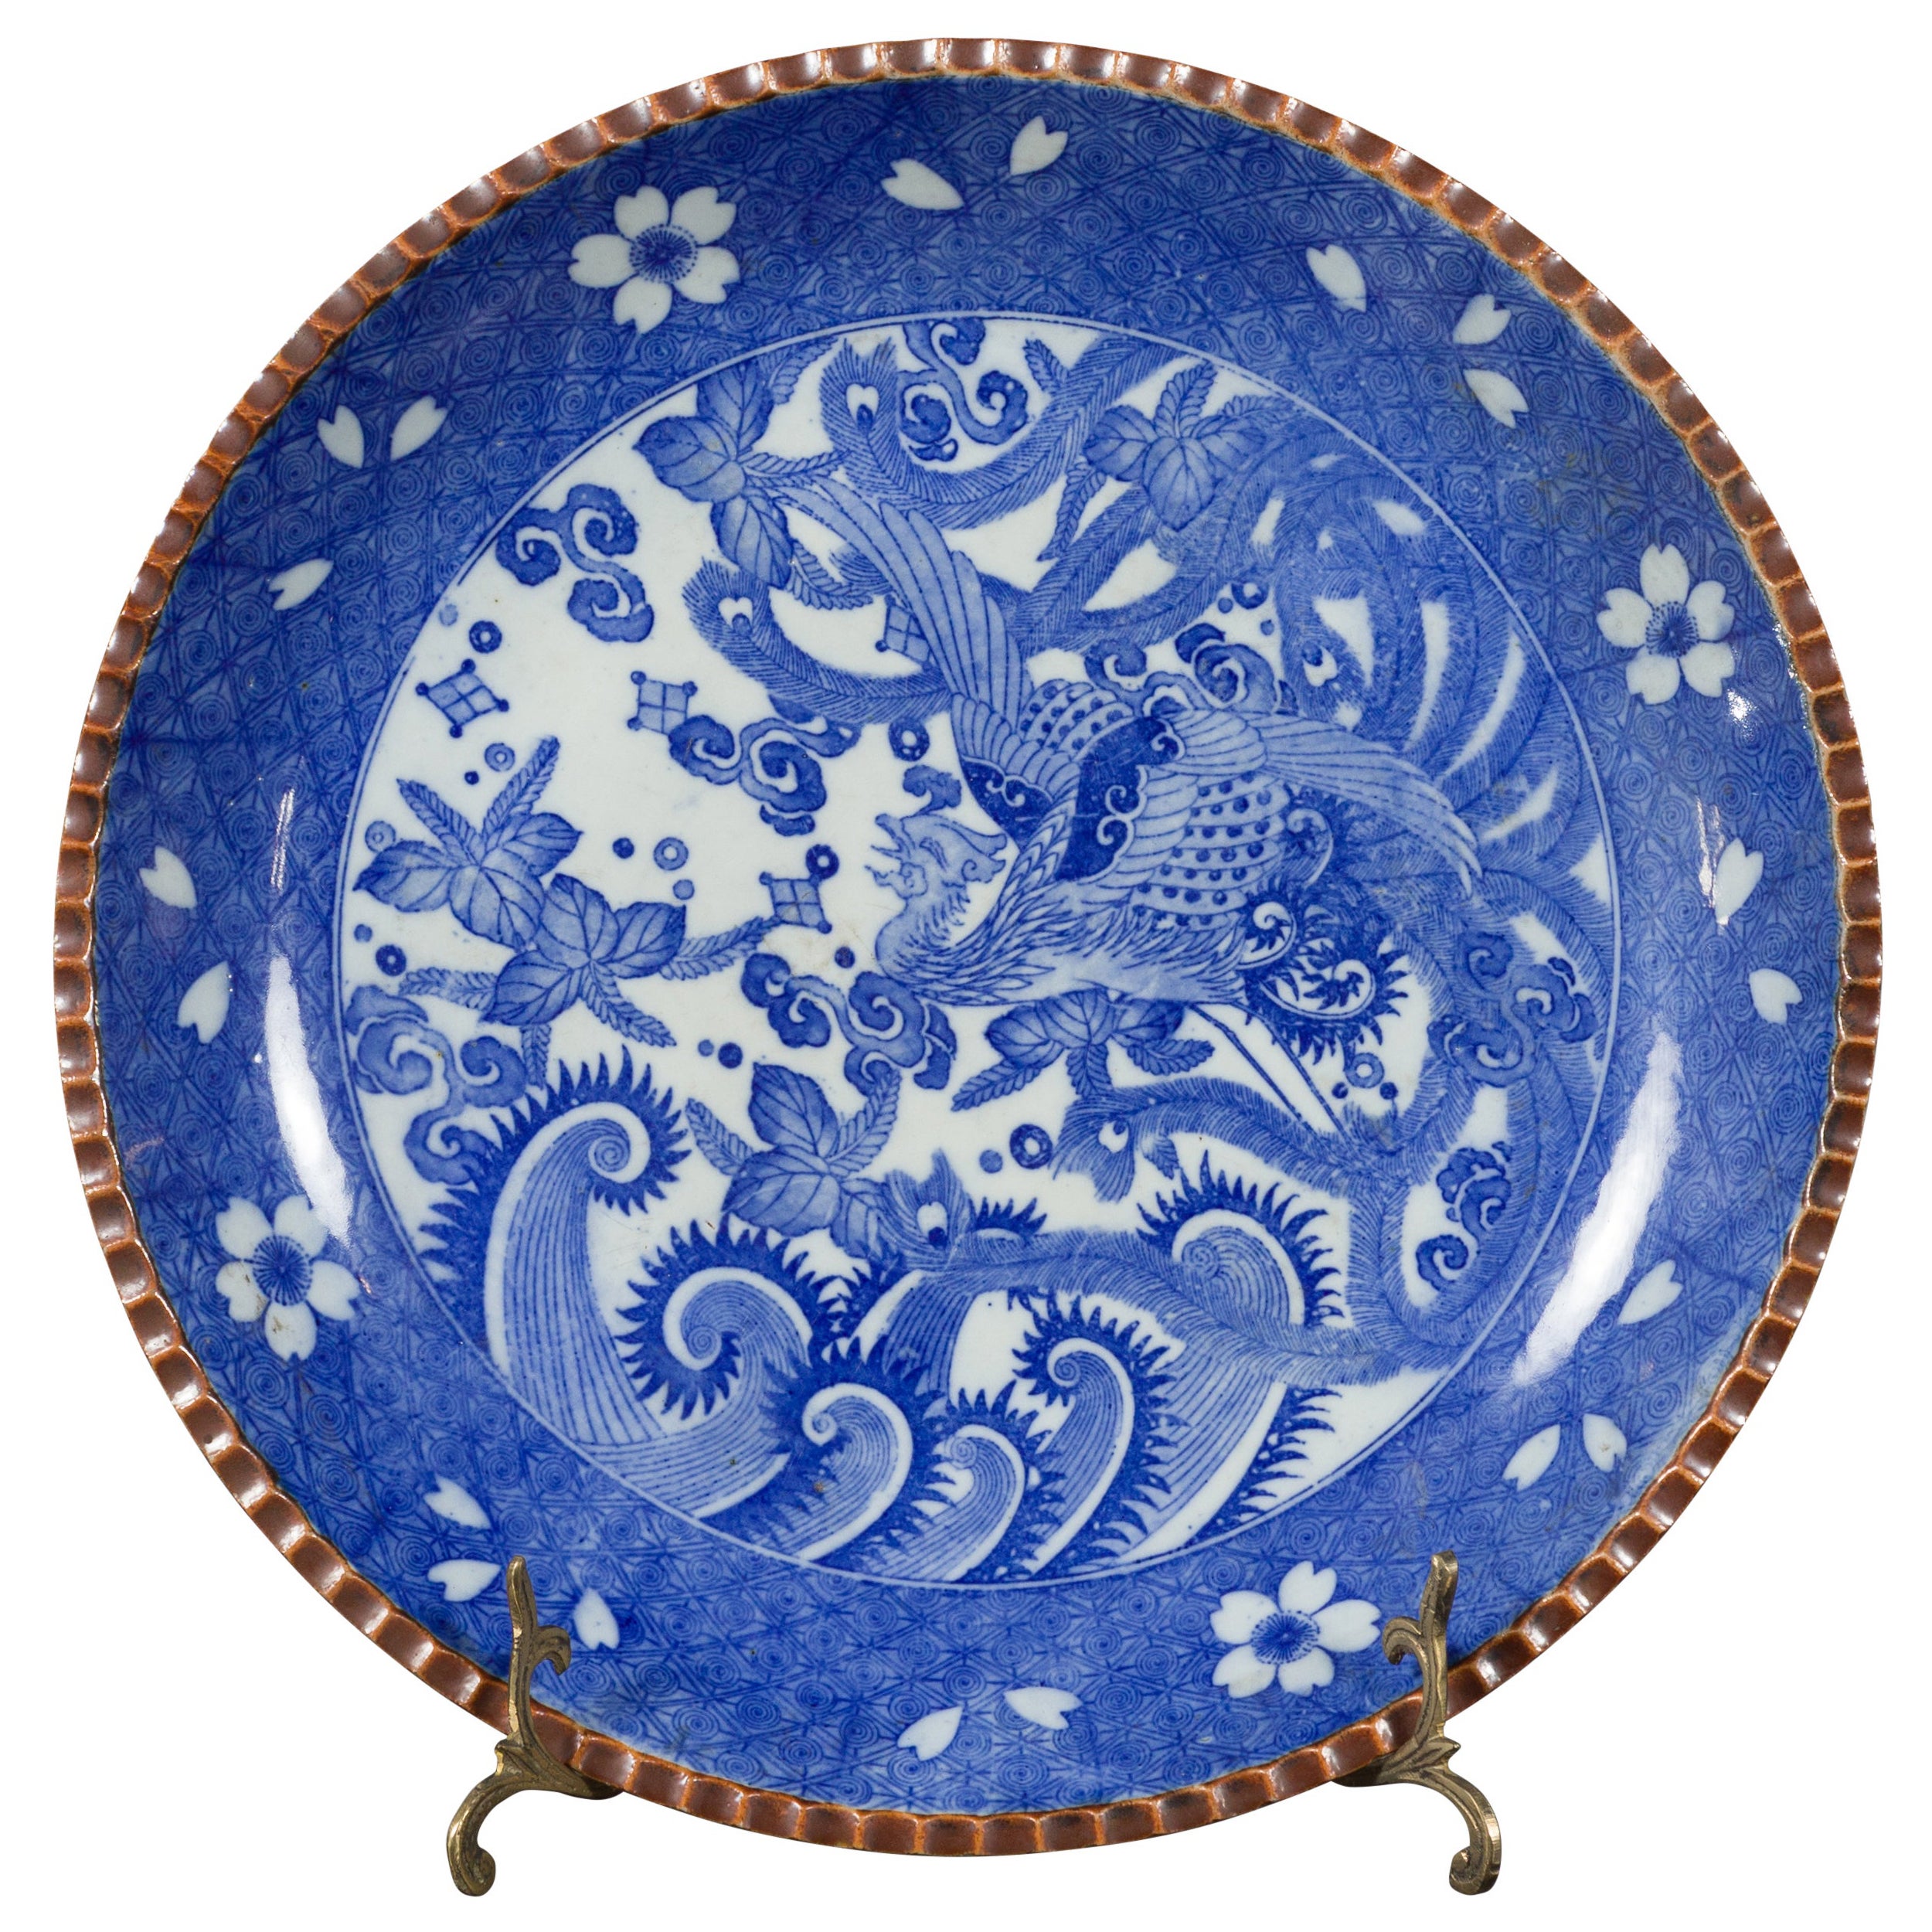 Meiji Period Japanese Igezara Transferware Plate with Phoenix and Foliage Motifs